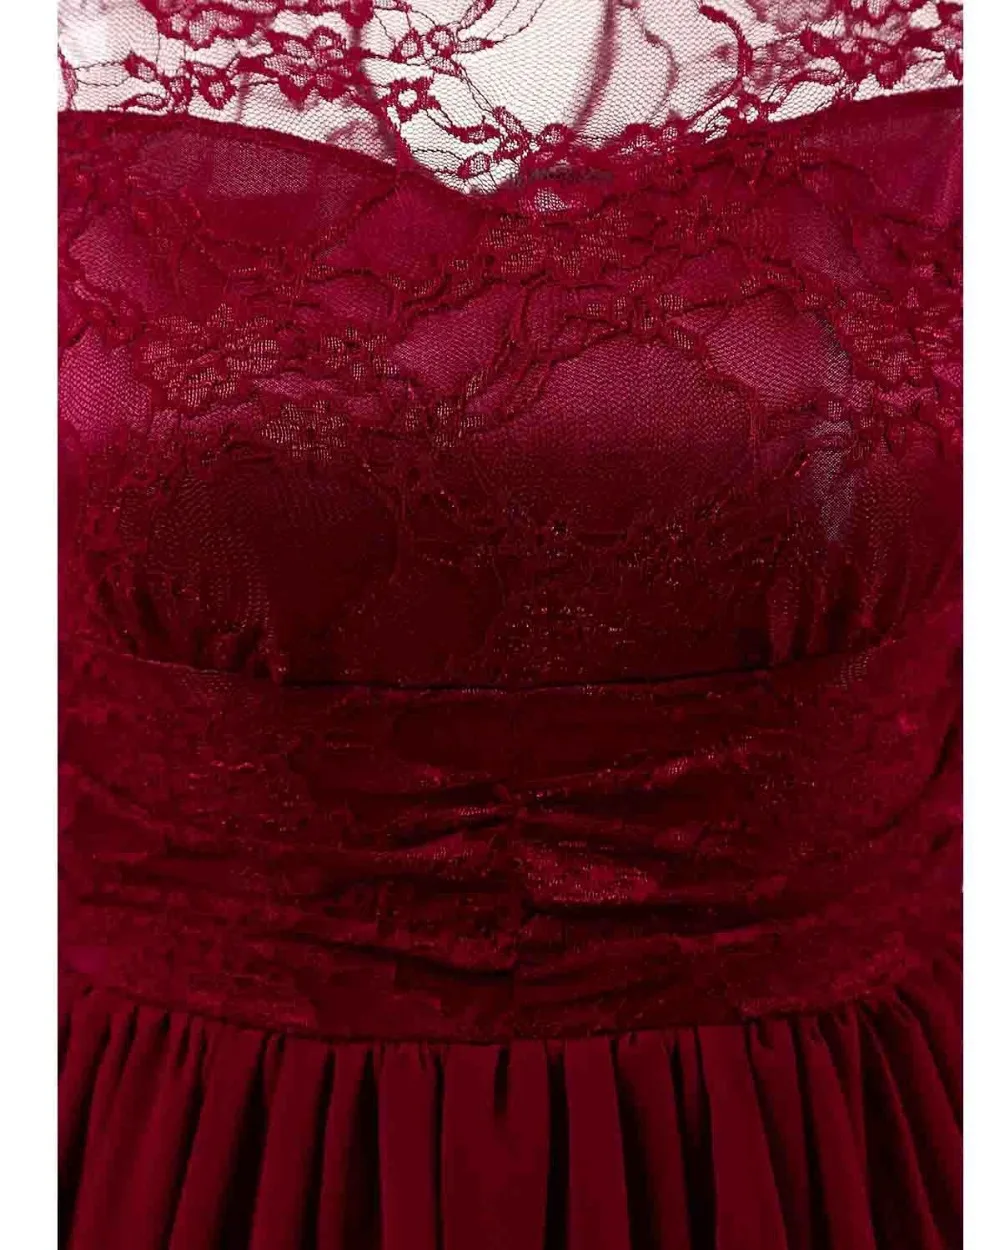 CD1581 # бордовый Кружева шифон Короткие платья невесты Свадебная вечеринка платье для выпускного сестра невесты тост оптовая продажа